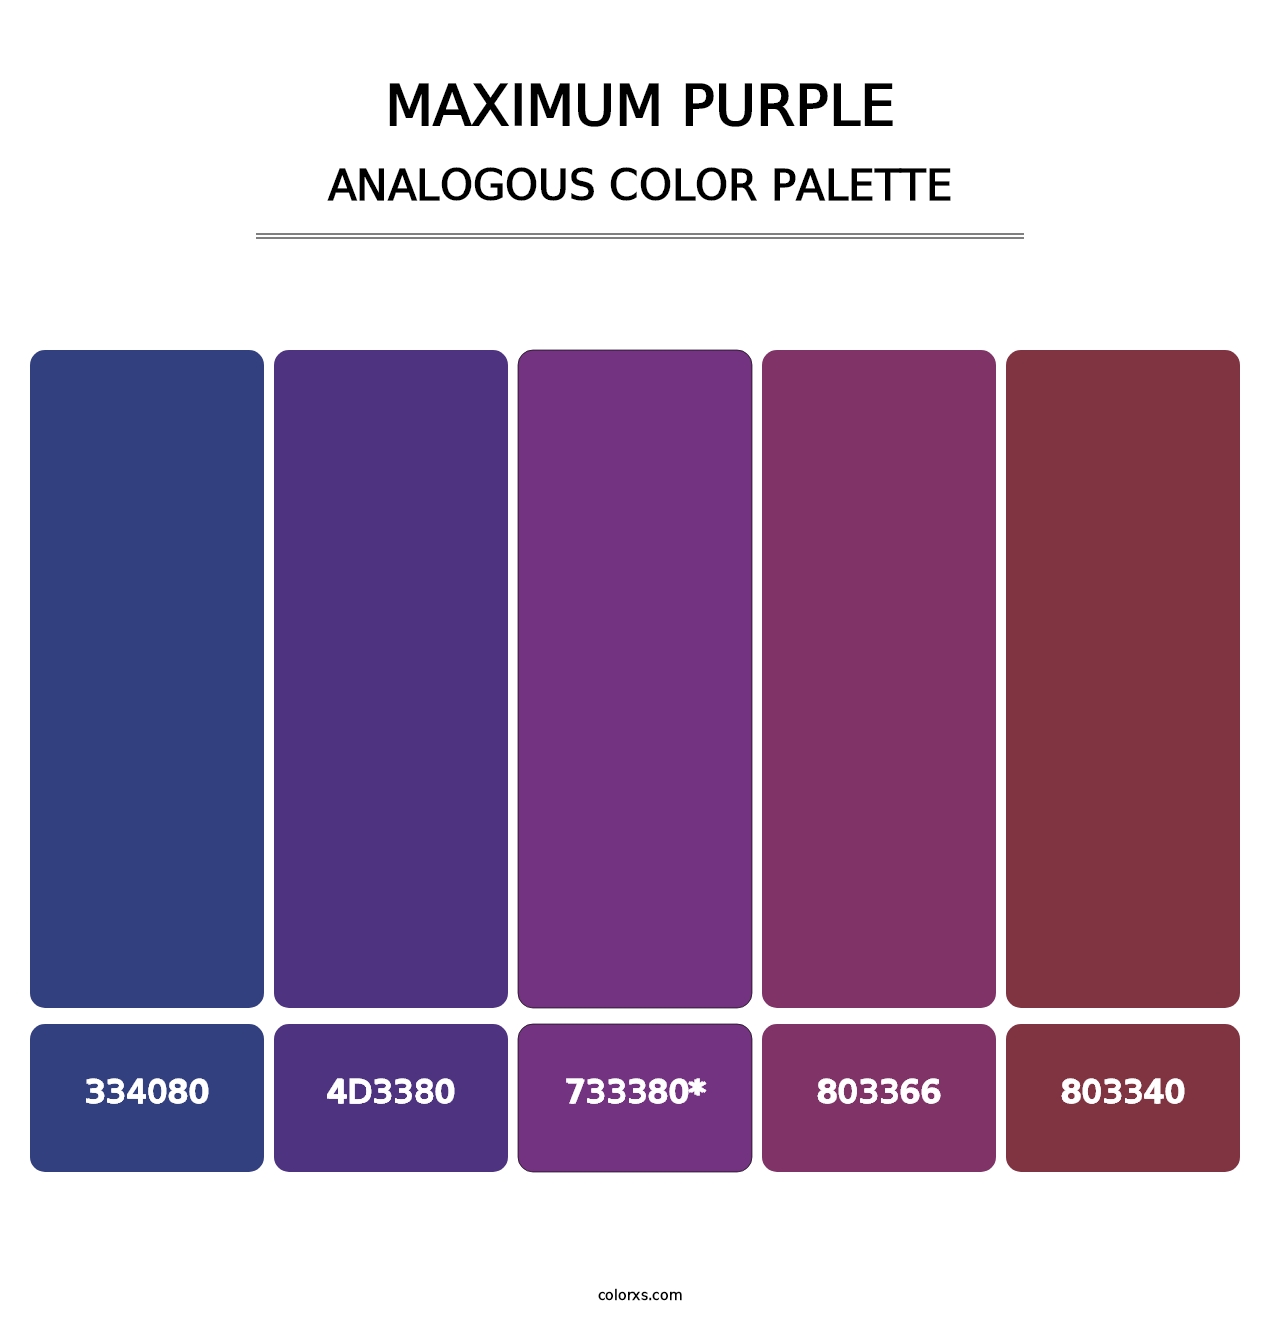 Maximum Purple - Analogous Color Palette